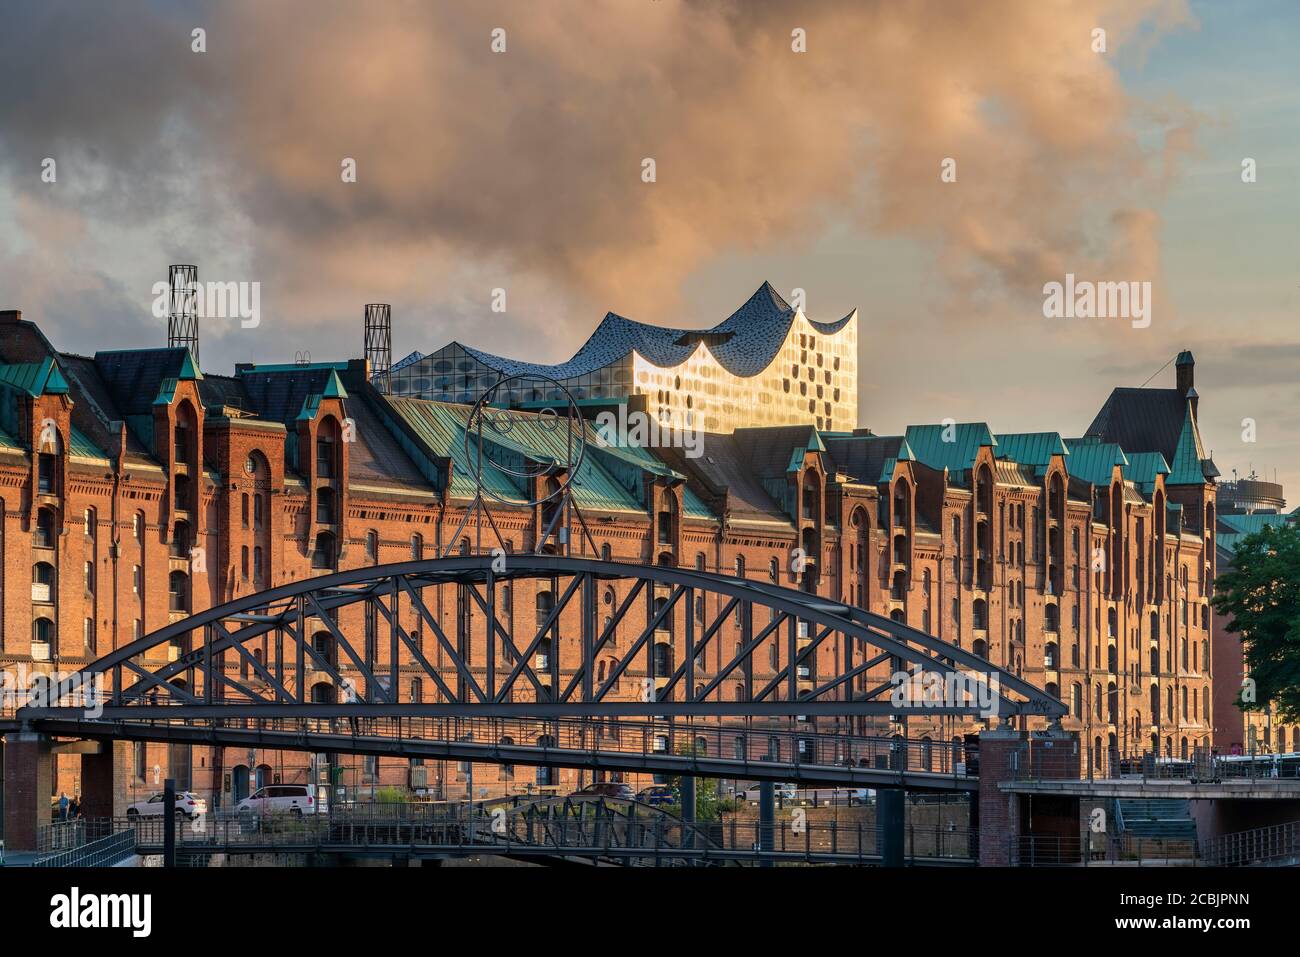 Speicherstadt Hamburgo, Elbphilharmonie, HafenCity, Hamburgo, Alemania Foto de stock